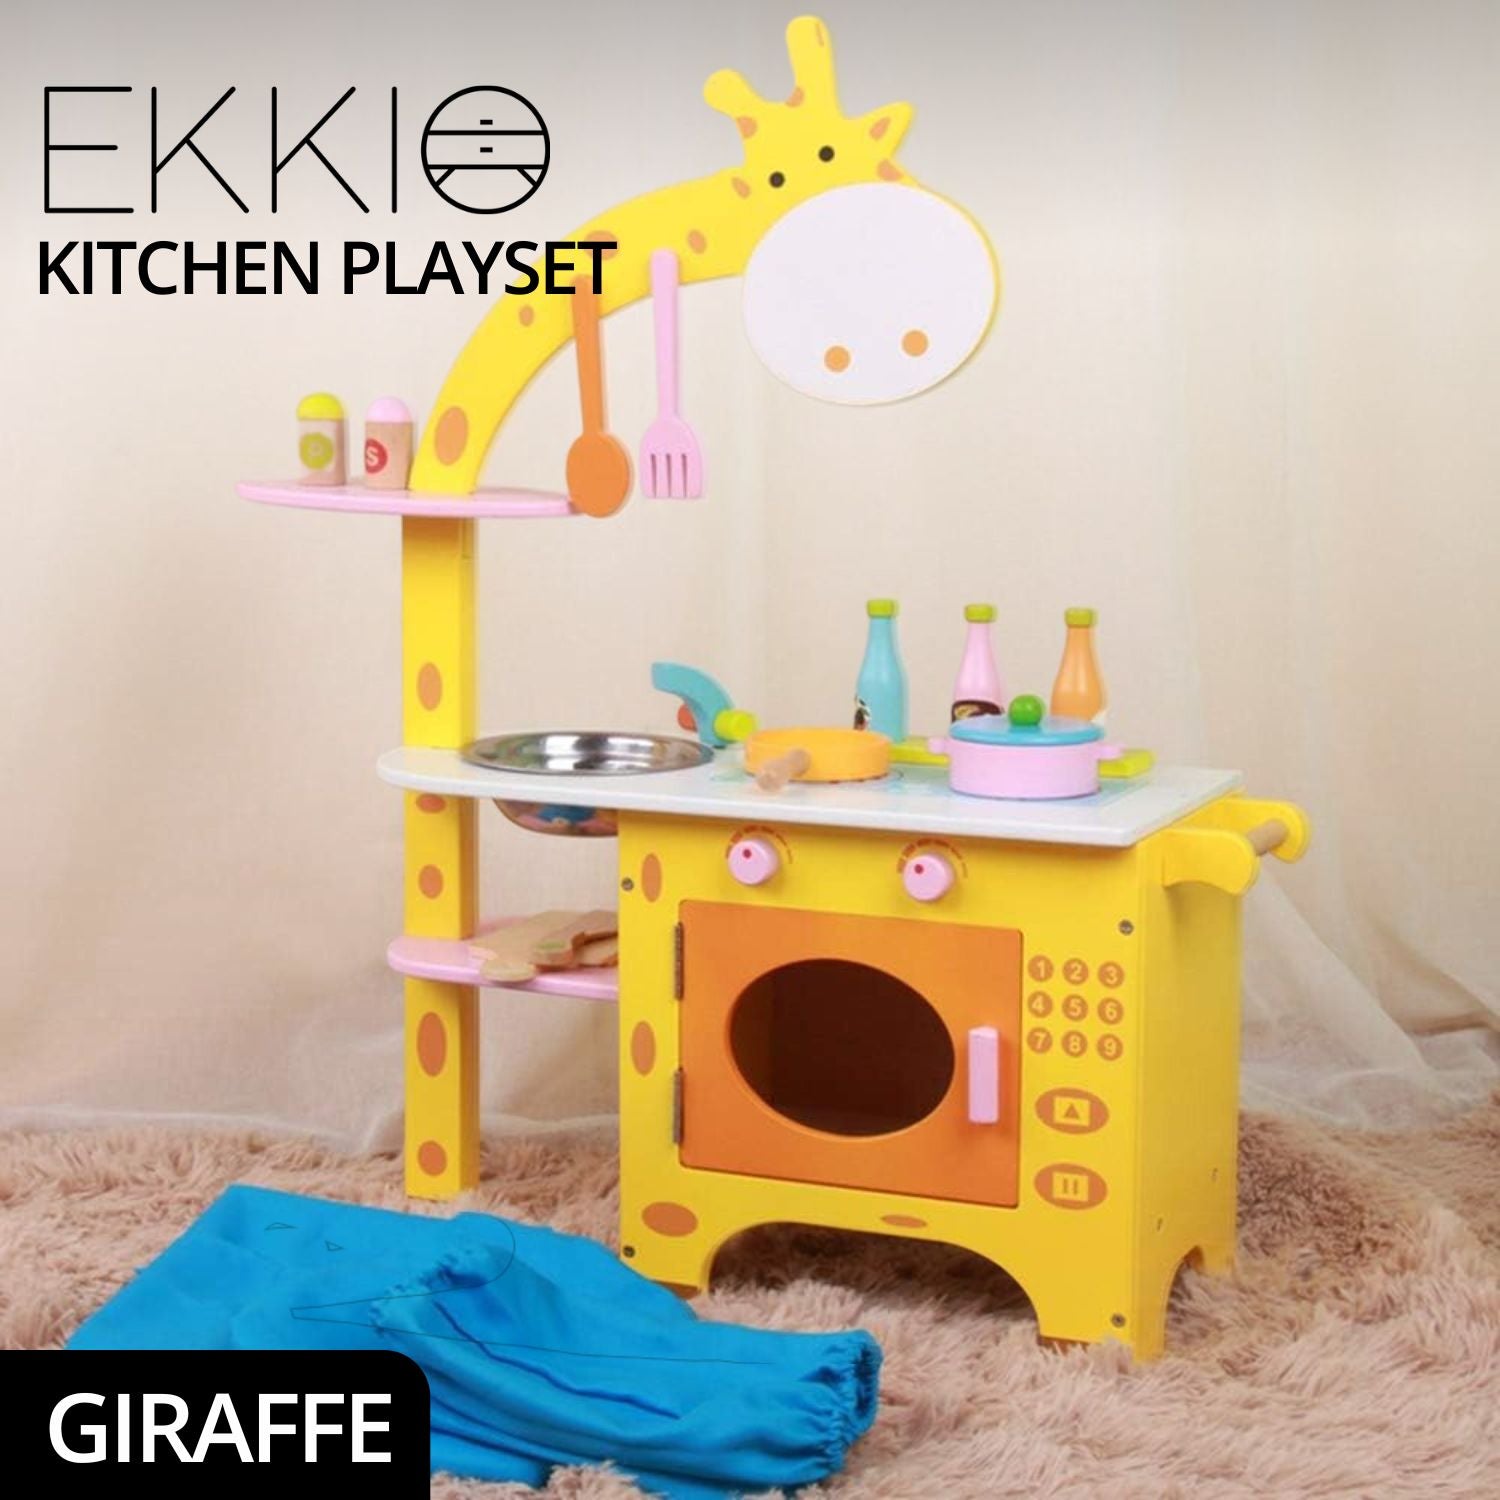 Ekkio Wooden Kitchen Playset for Kids (Giraffe Shape Kitchen Set)